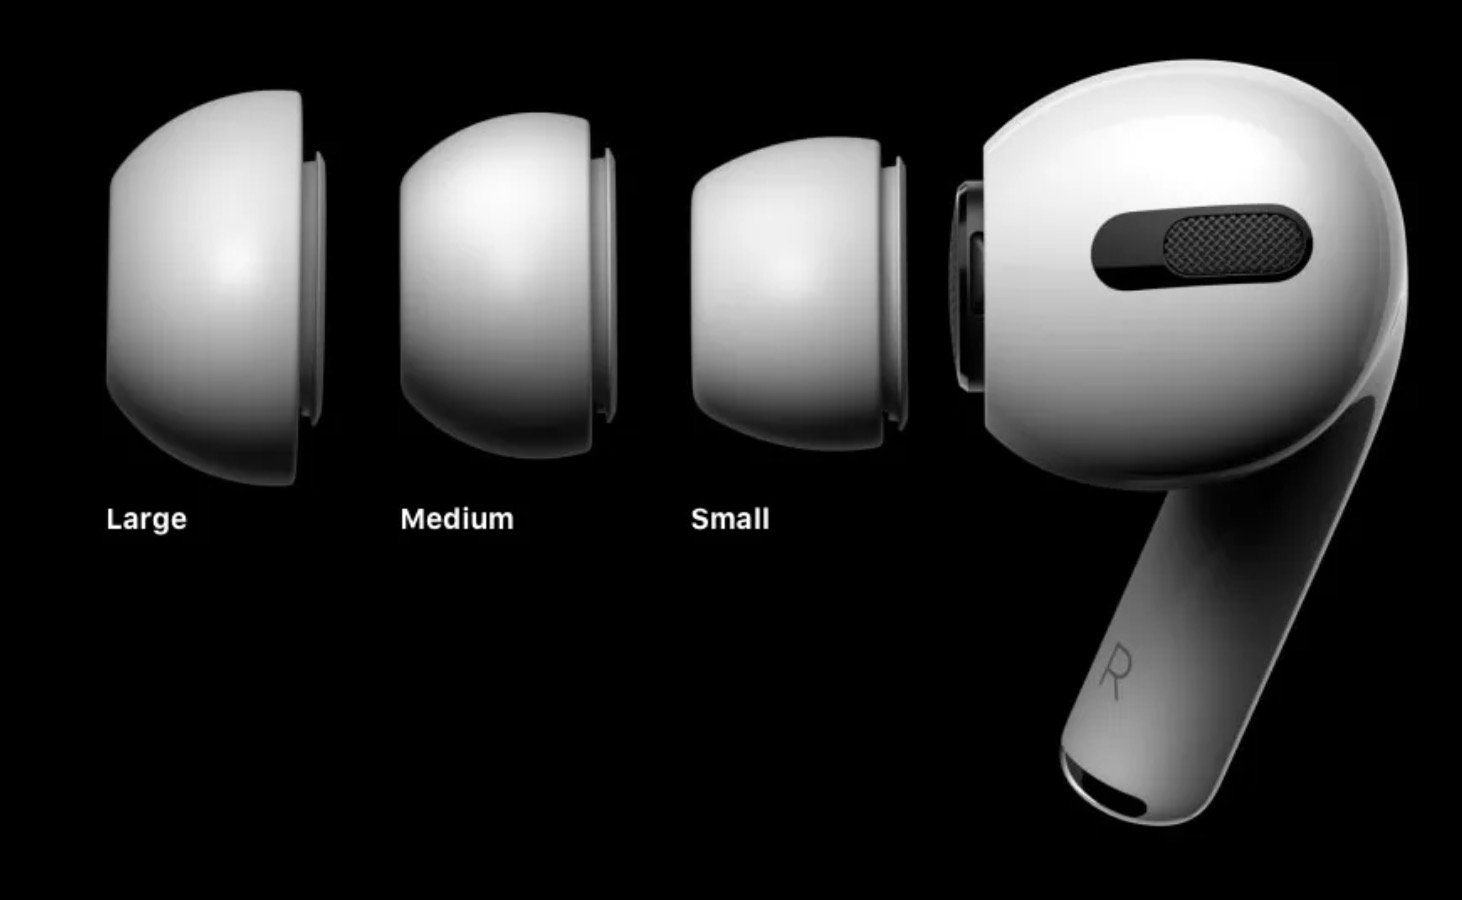 Apple chính thức ra
mắt AirPods Pro: thiết kế nhét tai, chống ồn chủ động, tích
hợp cảm biến lực, giá 5,8 triệu VND